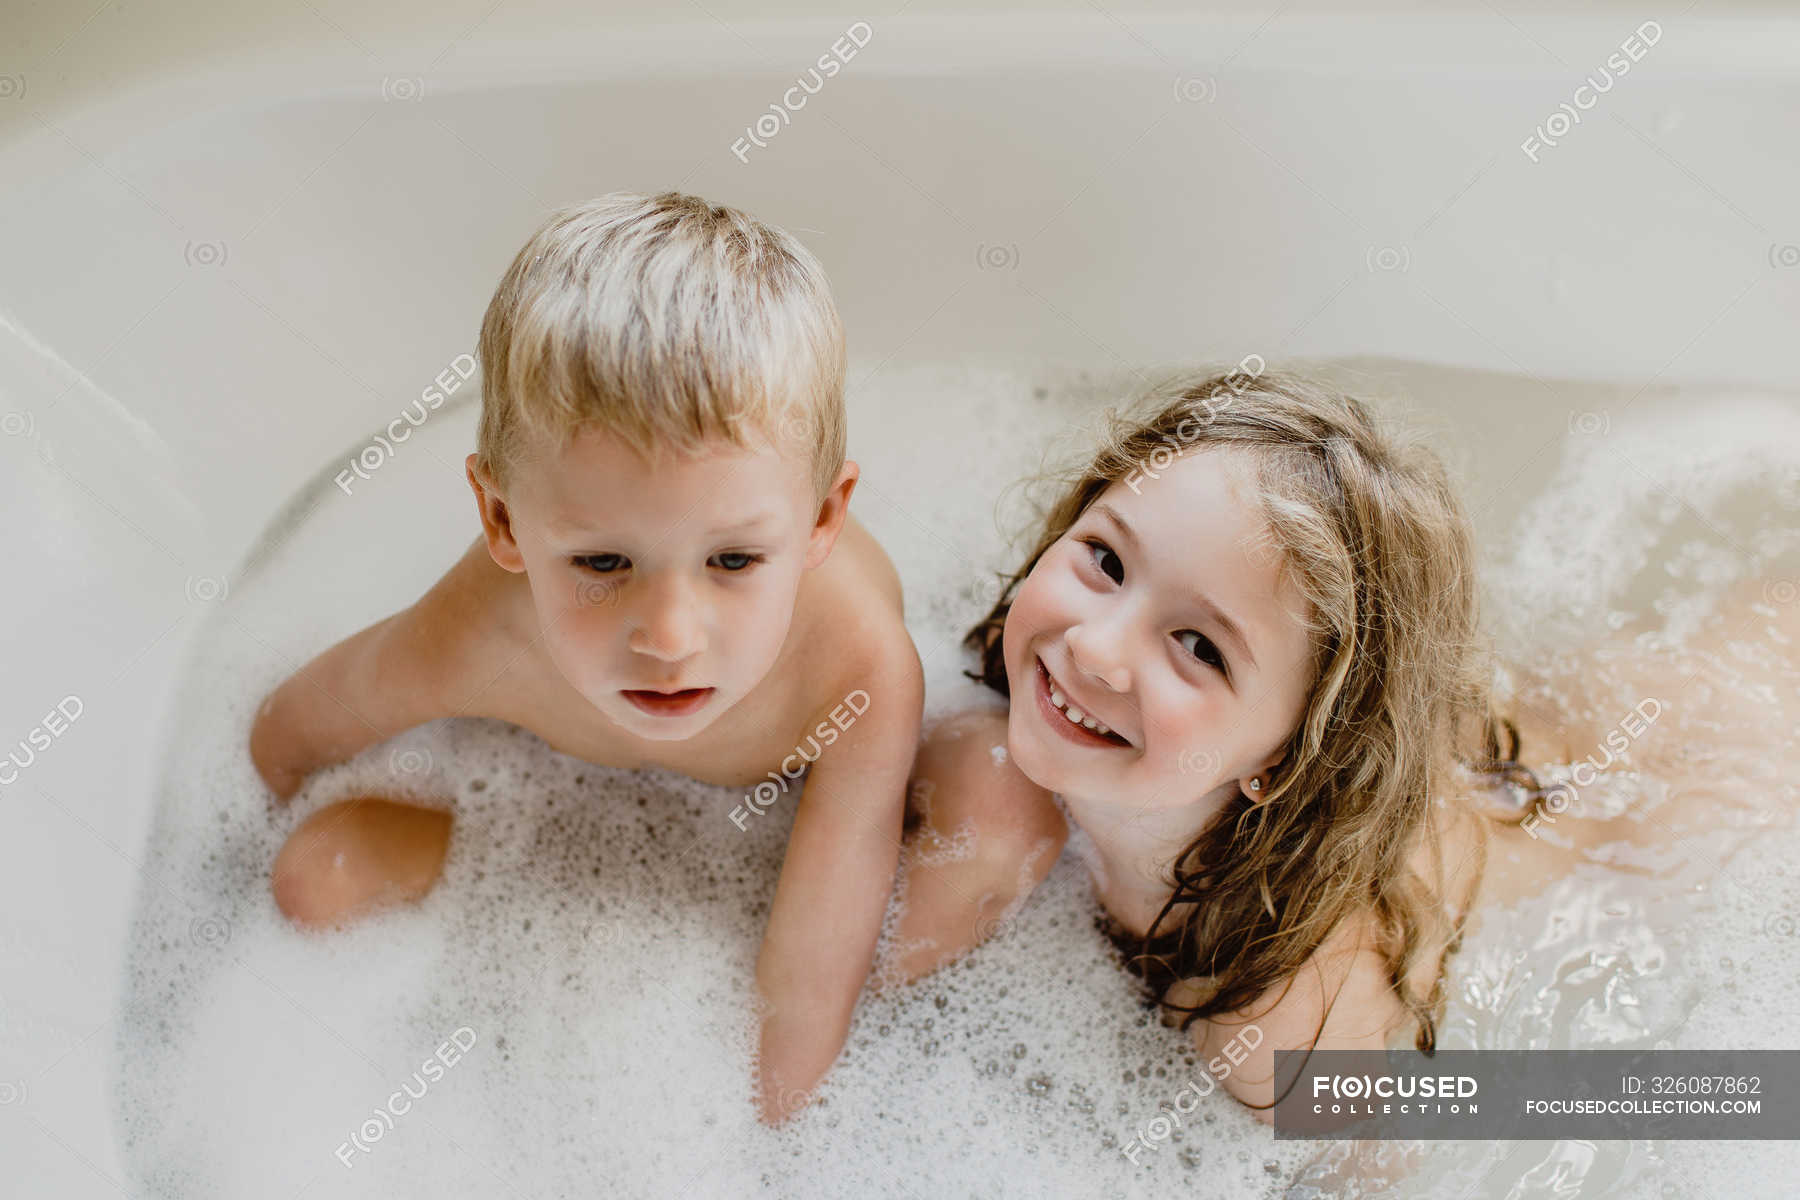 фотографии с голыми детьми в ванной (120) фото